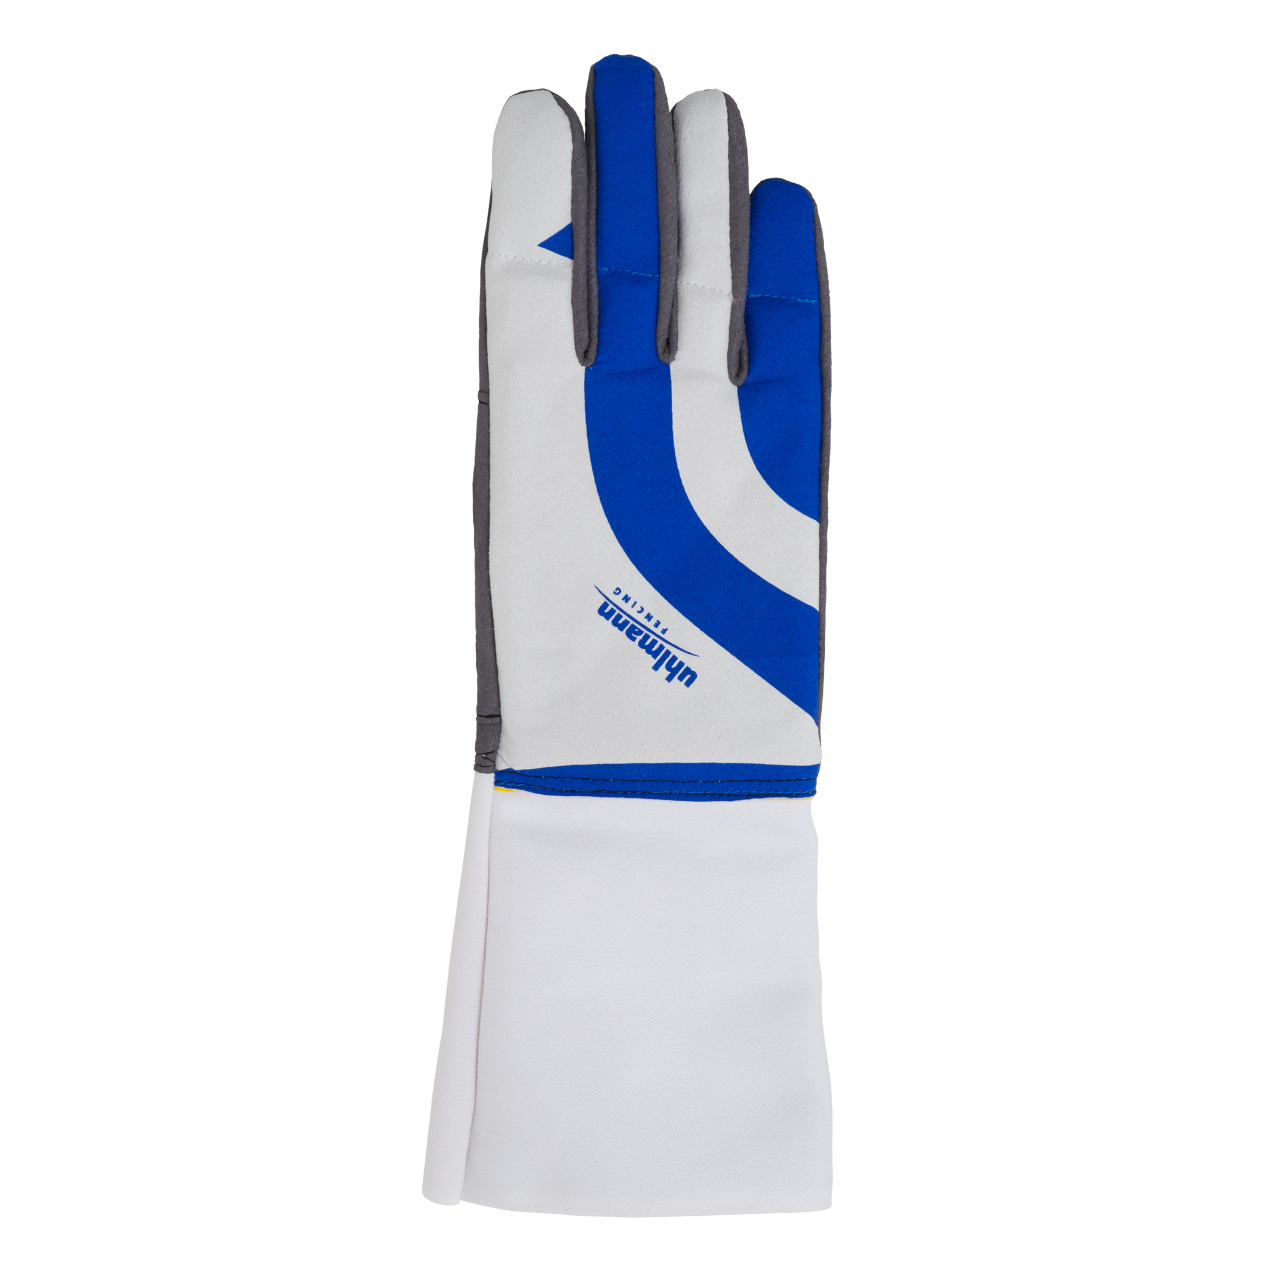 Uhlmann Power glove (discontinued) – Allstar Uhlmann